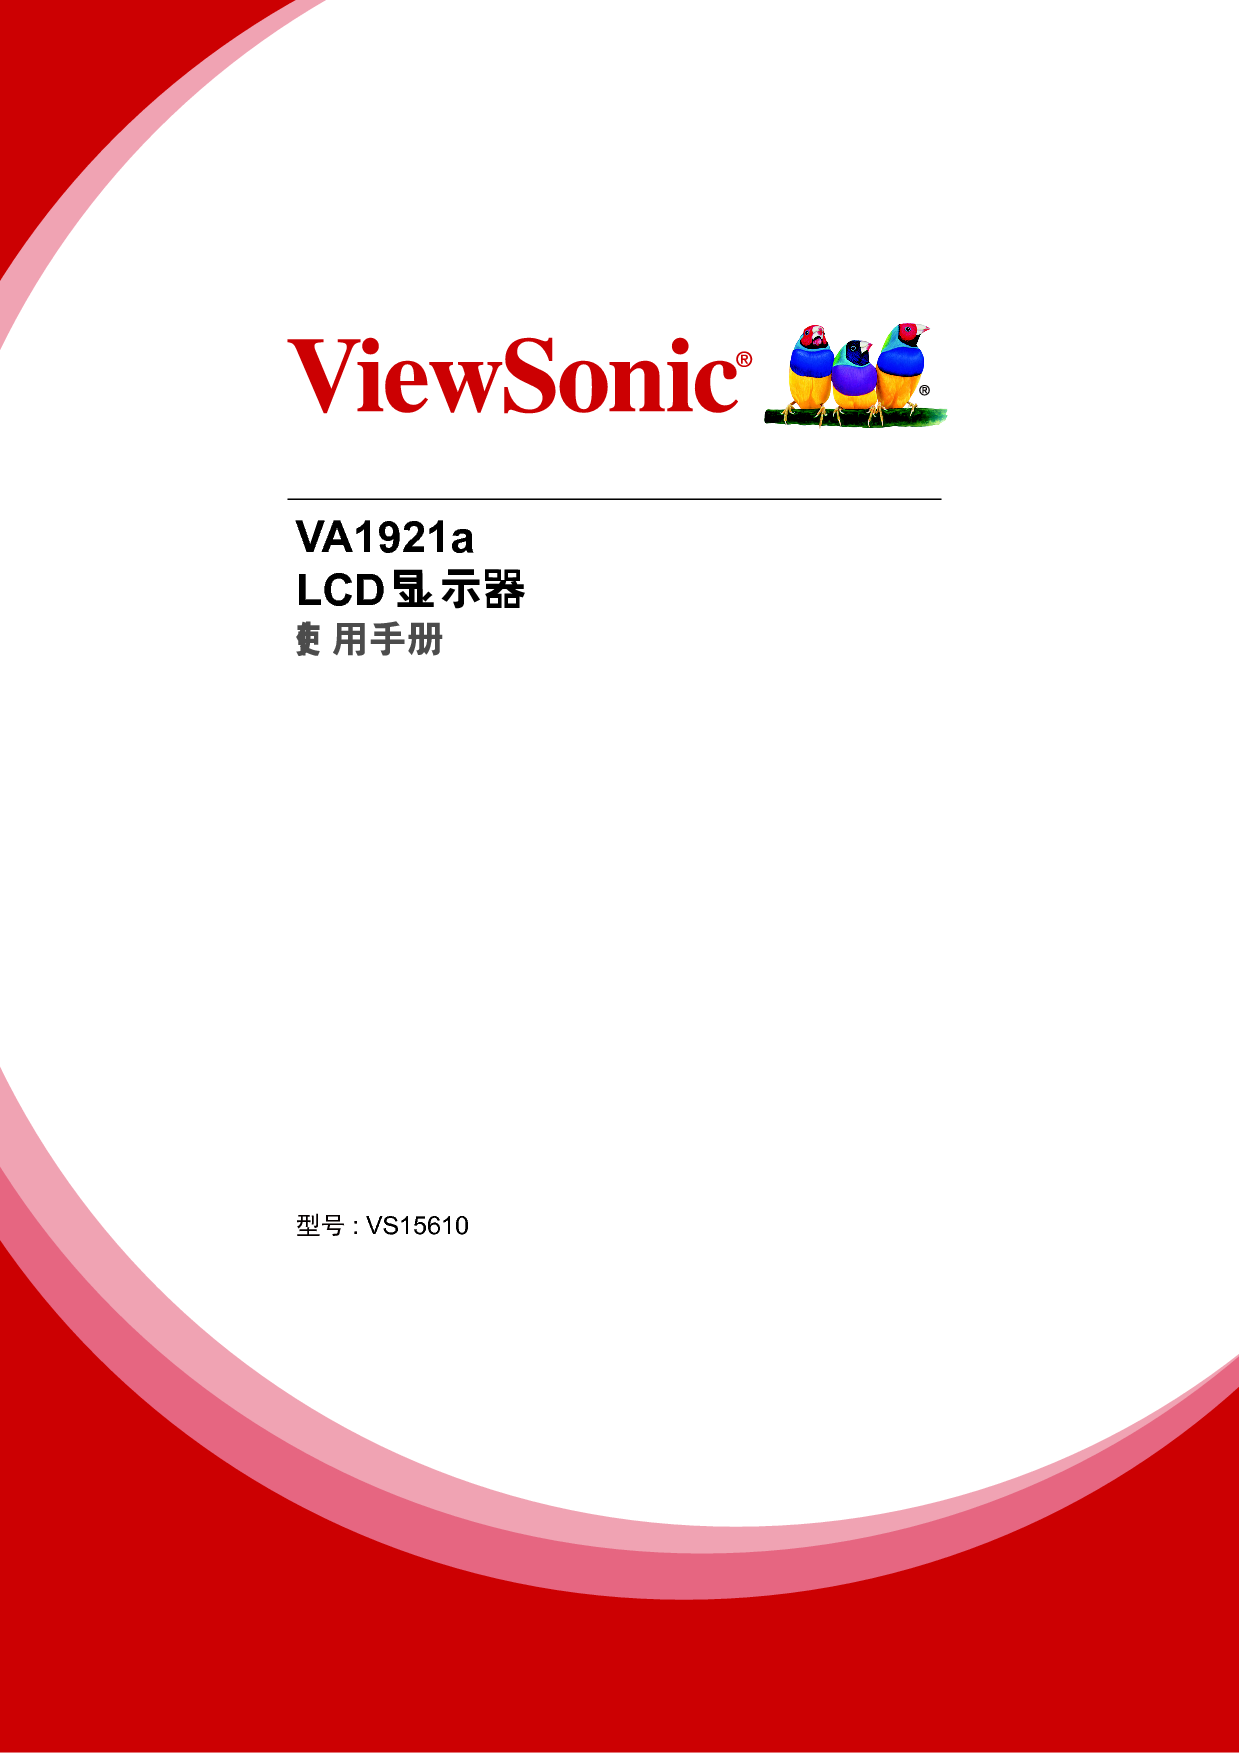 优派 ViewSonic VA1921a 使用手册 封面